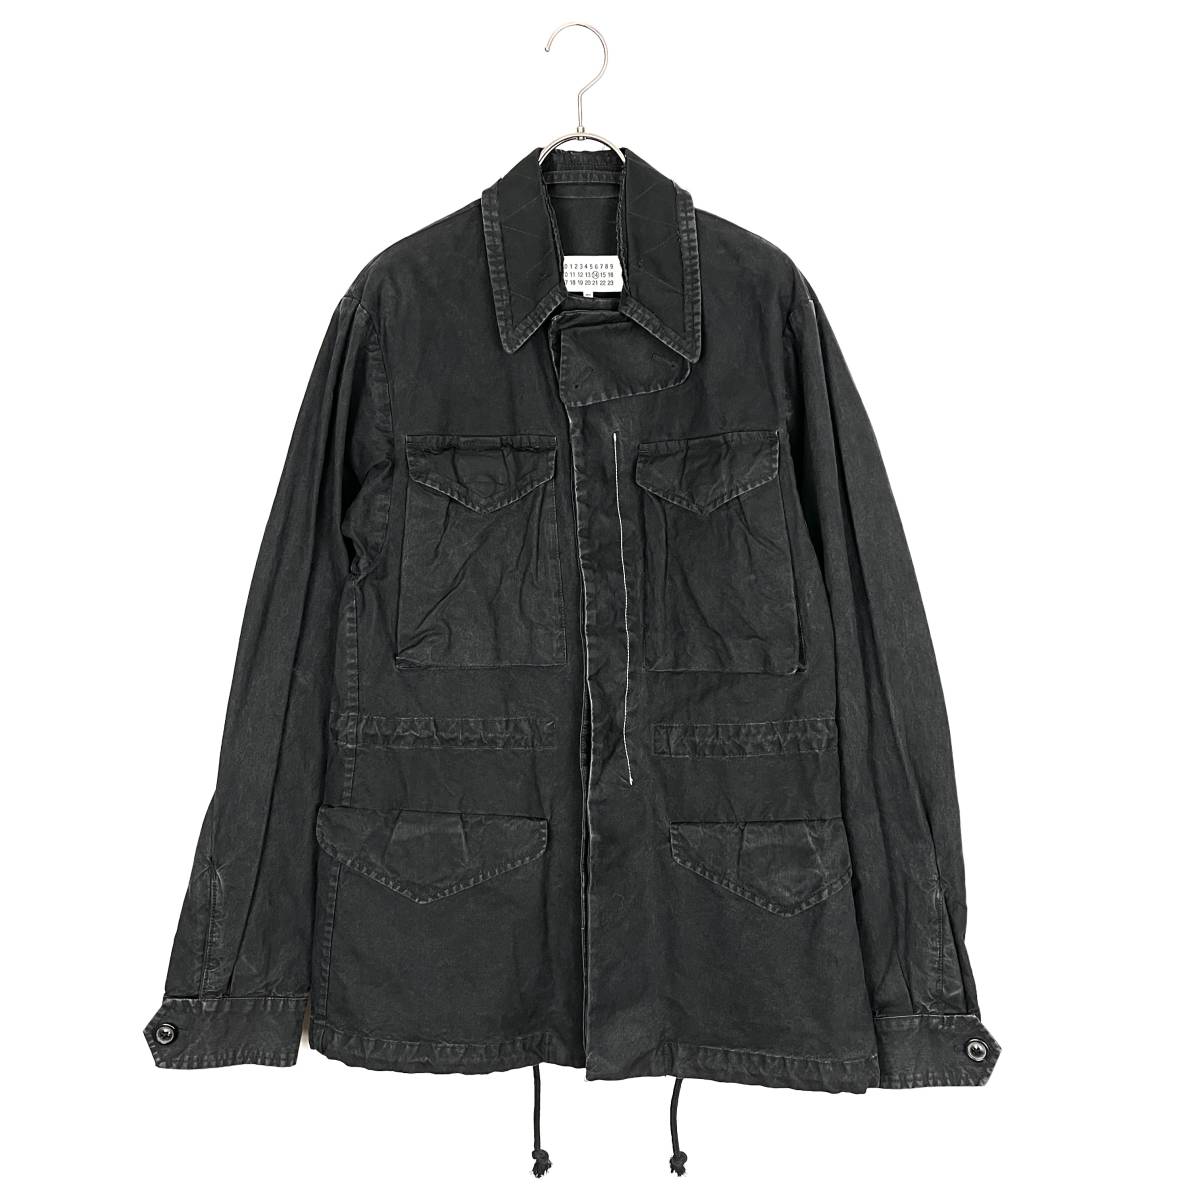 Maison Margiela(メゾン マルジェラ) cotton jacket (black)